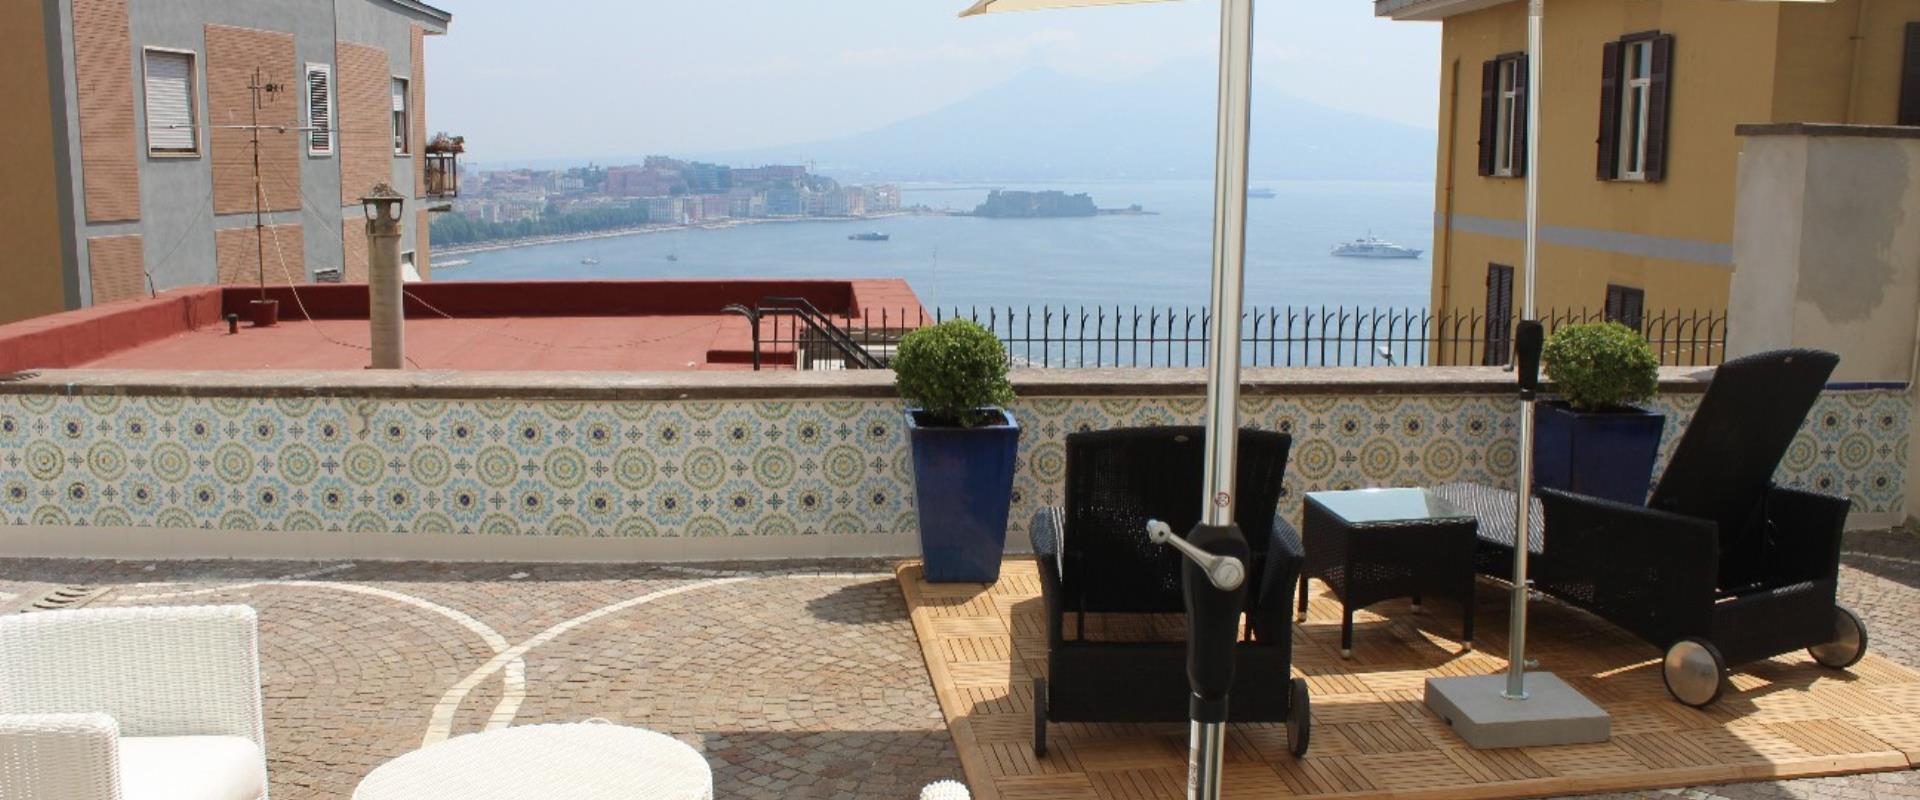 Descubre las maravillosas vistas sobre el Golfo de Nápoles que se puede admirar desde el paraíso del Hotel!